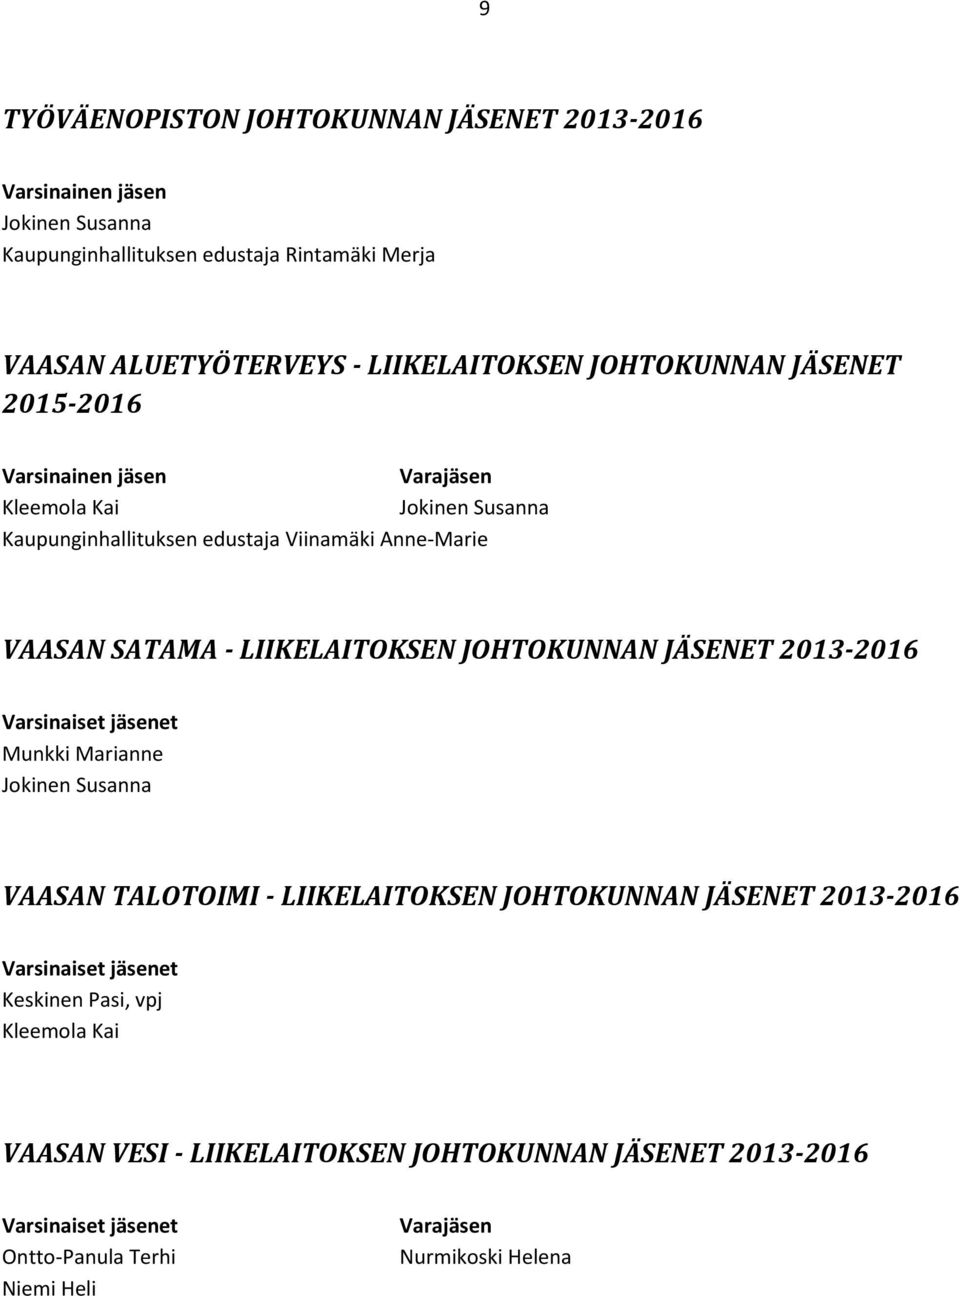 - LIIKELAITOKSEN JOHTOKUNNAN JÄSENET 2013-2016 Munkki Marianne Jokinen Susanna VAASAN TALOTOIMI - LIIKELAITOKSEN JOHTOKUNNAN JÄSENET